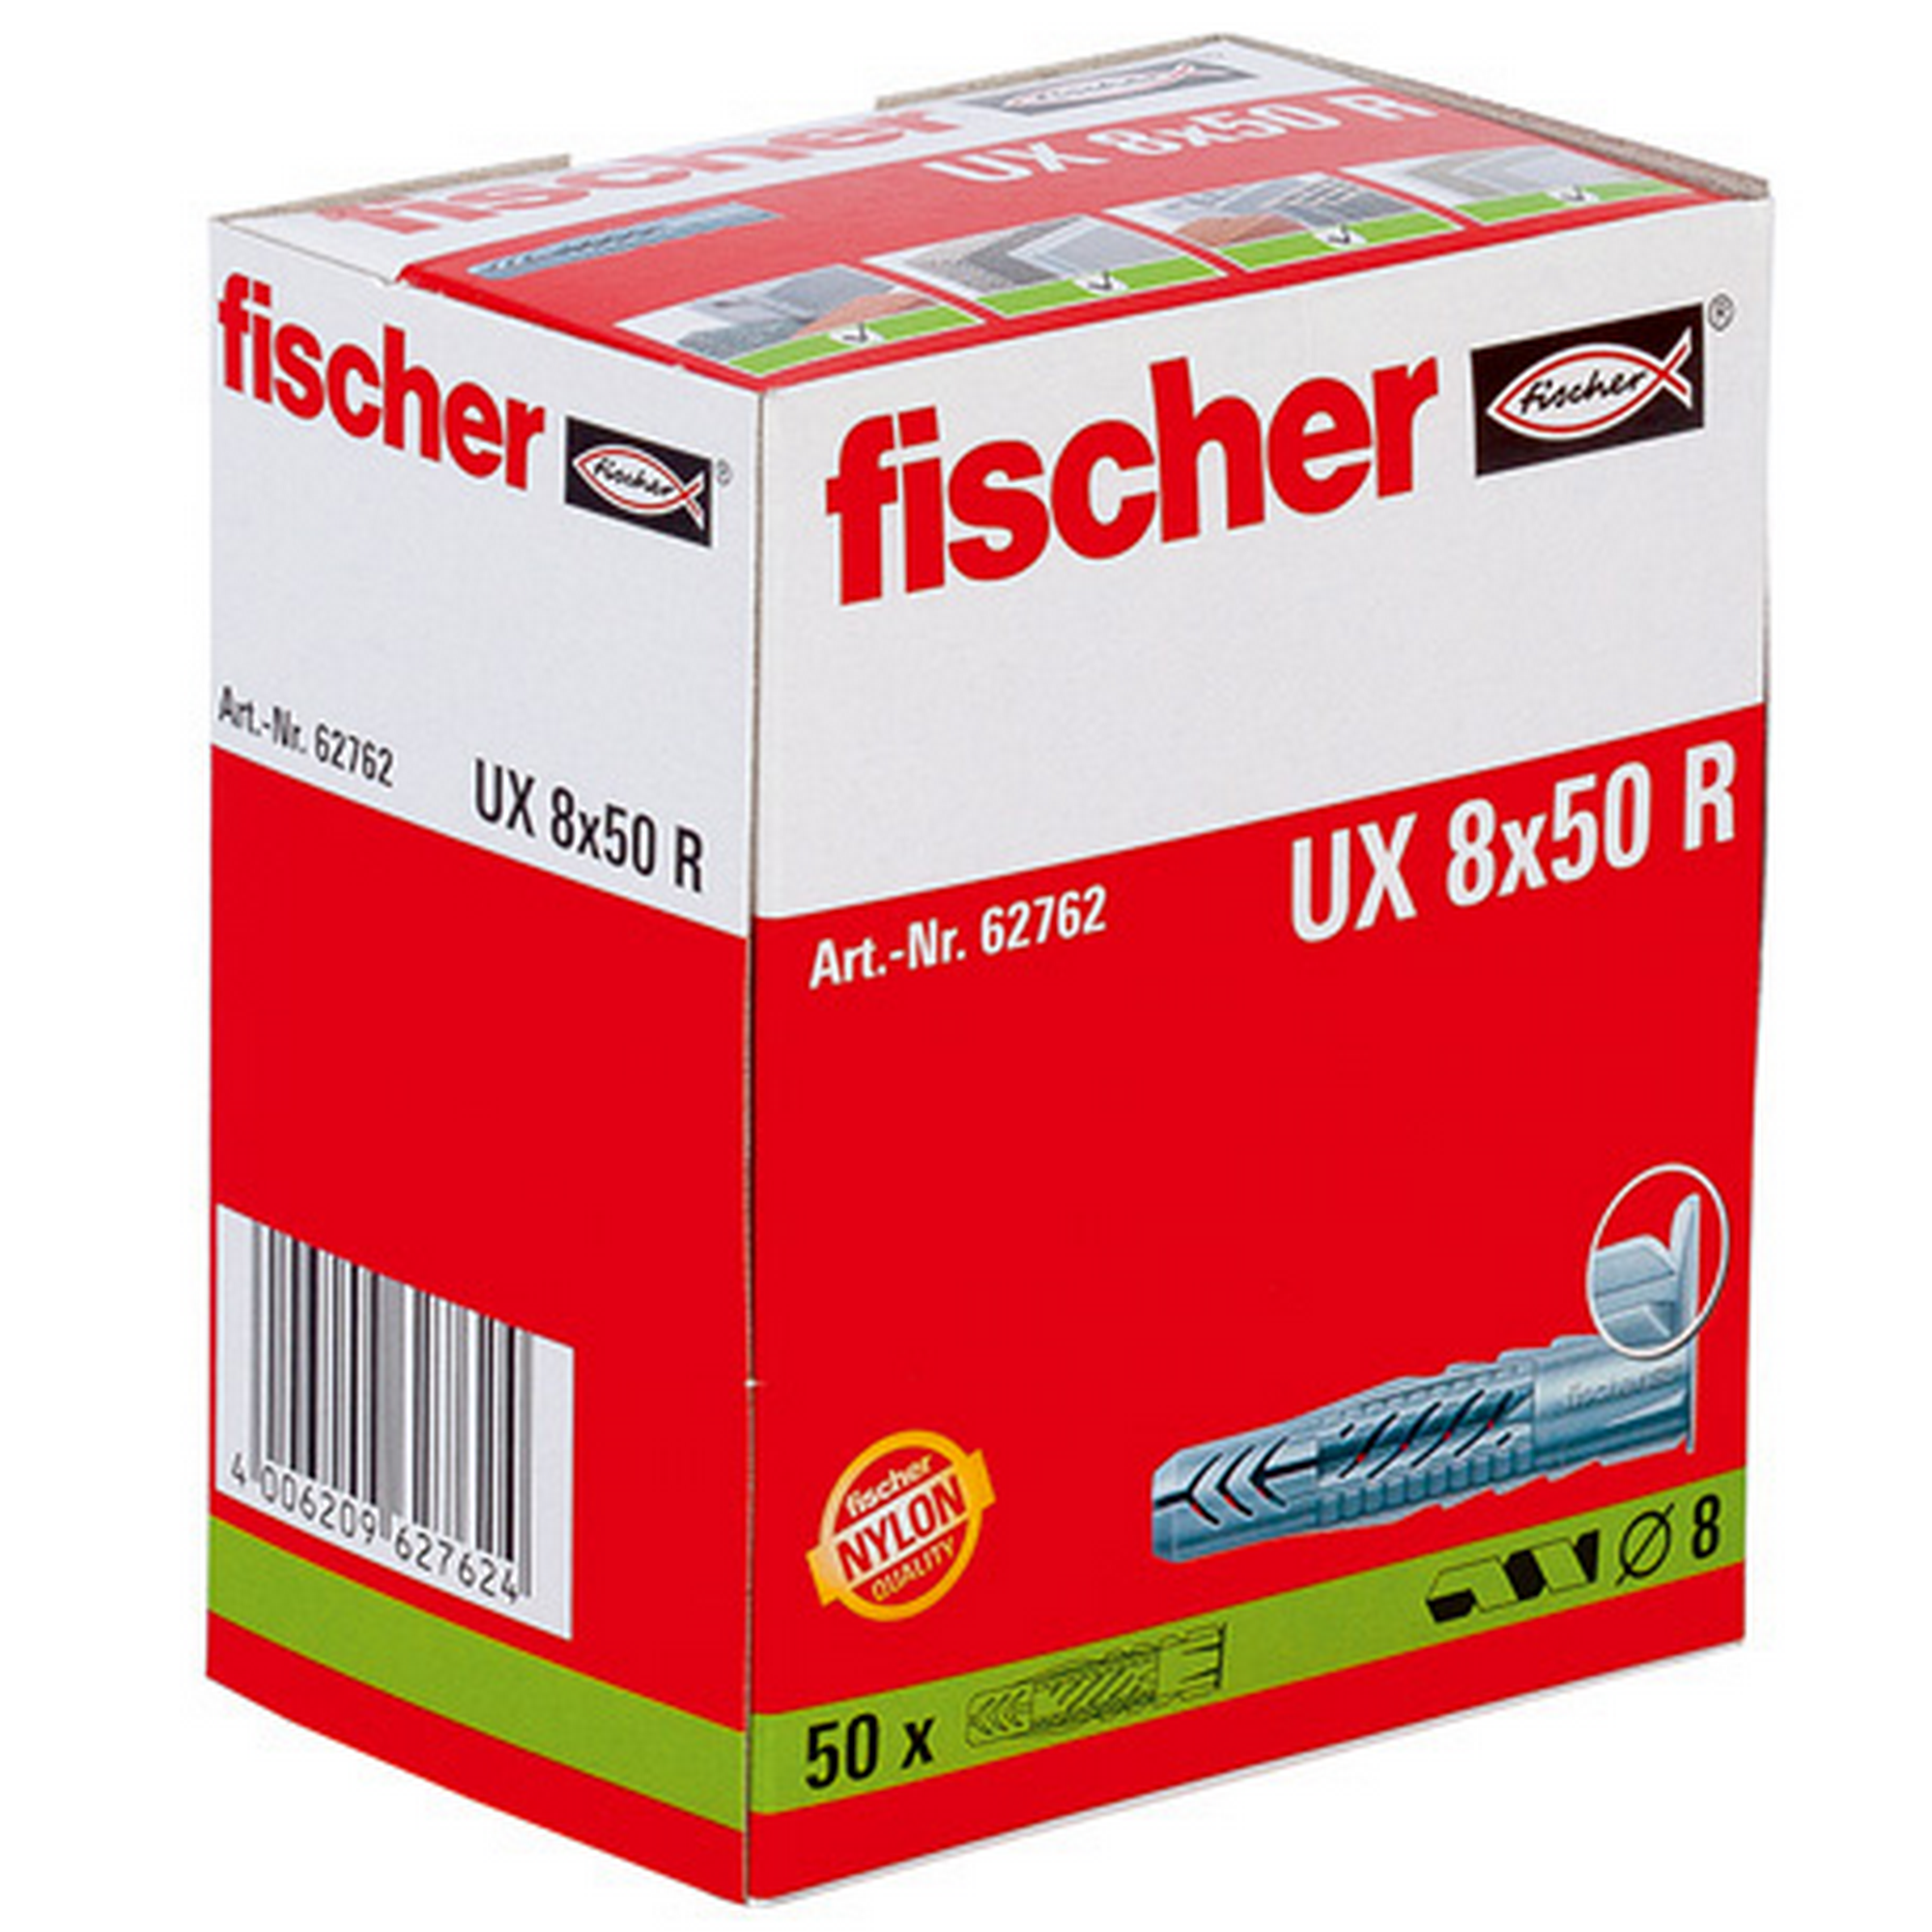 fischer Universaldübel UX 8 x 50 R mit Rand 50 Stück + product picture